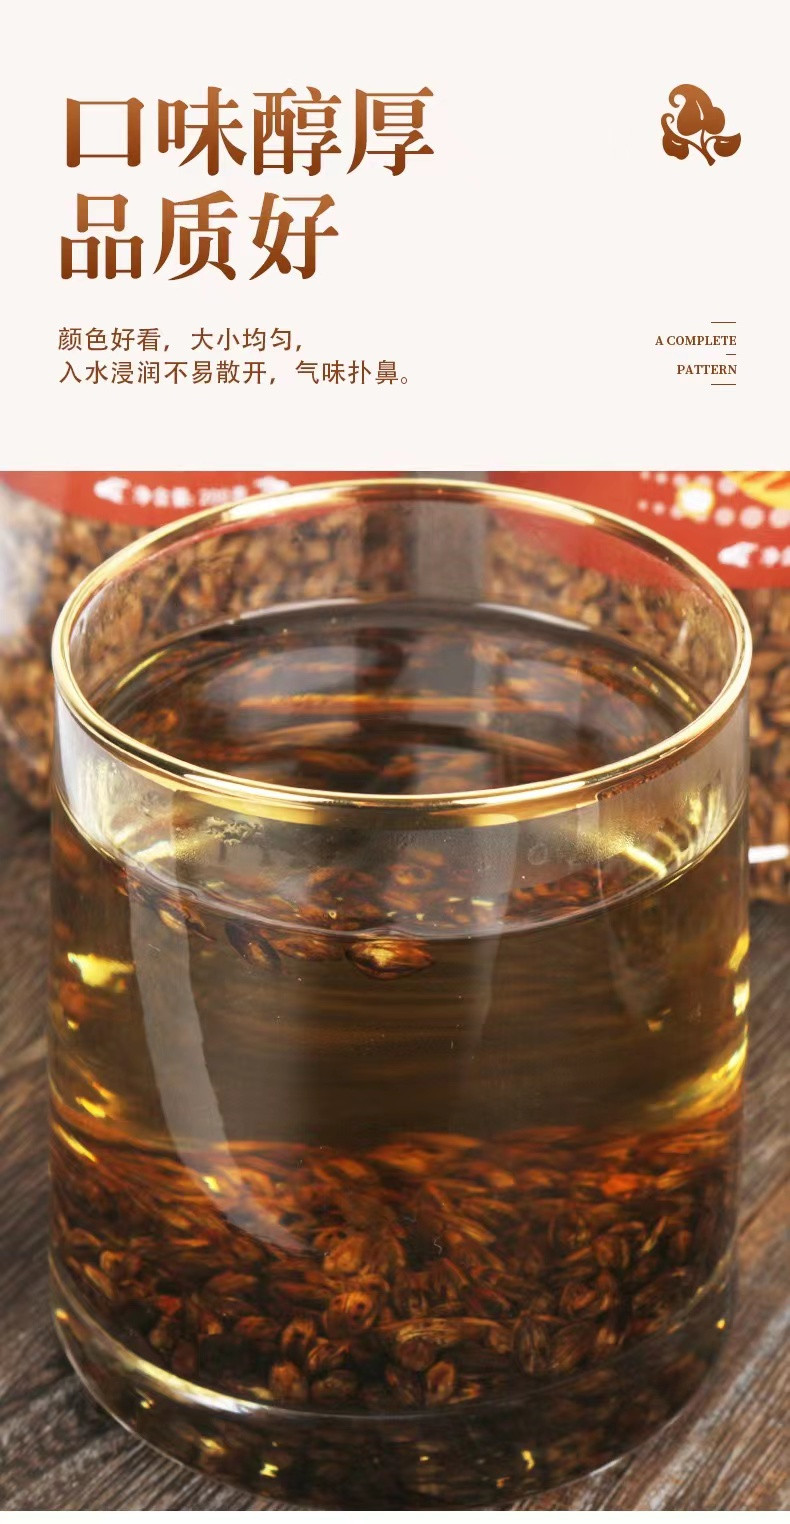 茗花百汇 【邮政助农】大麦茶200克/罐 醇香回甘常备茶饮【QG】